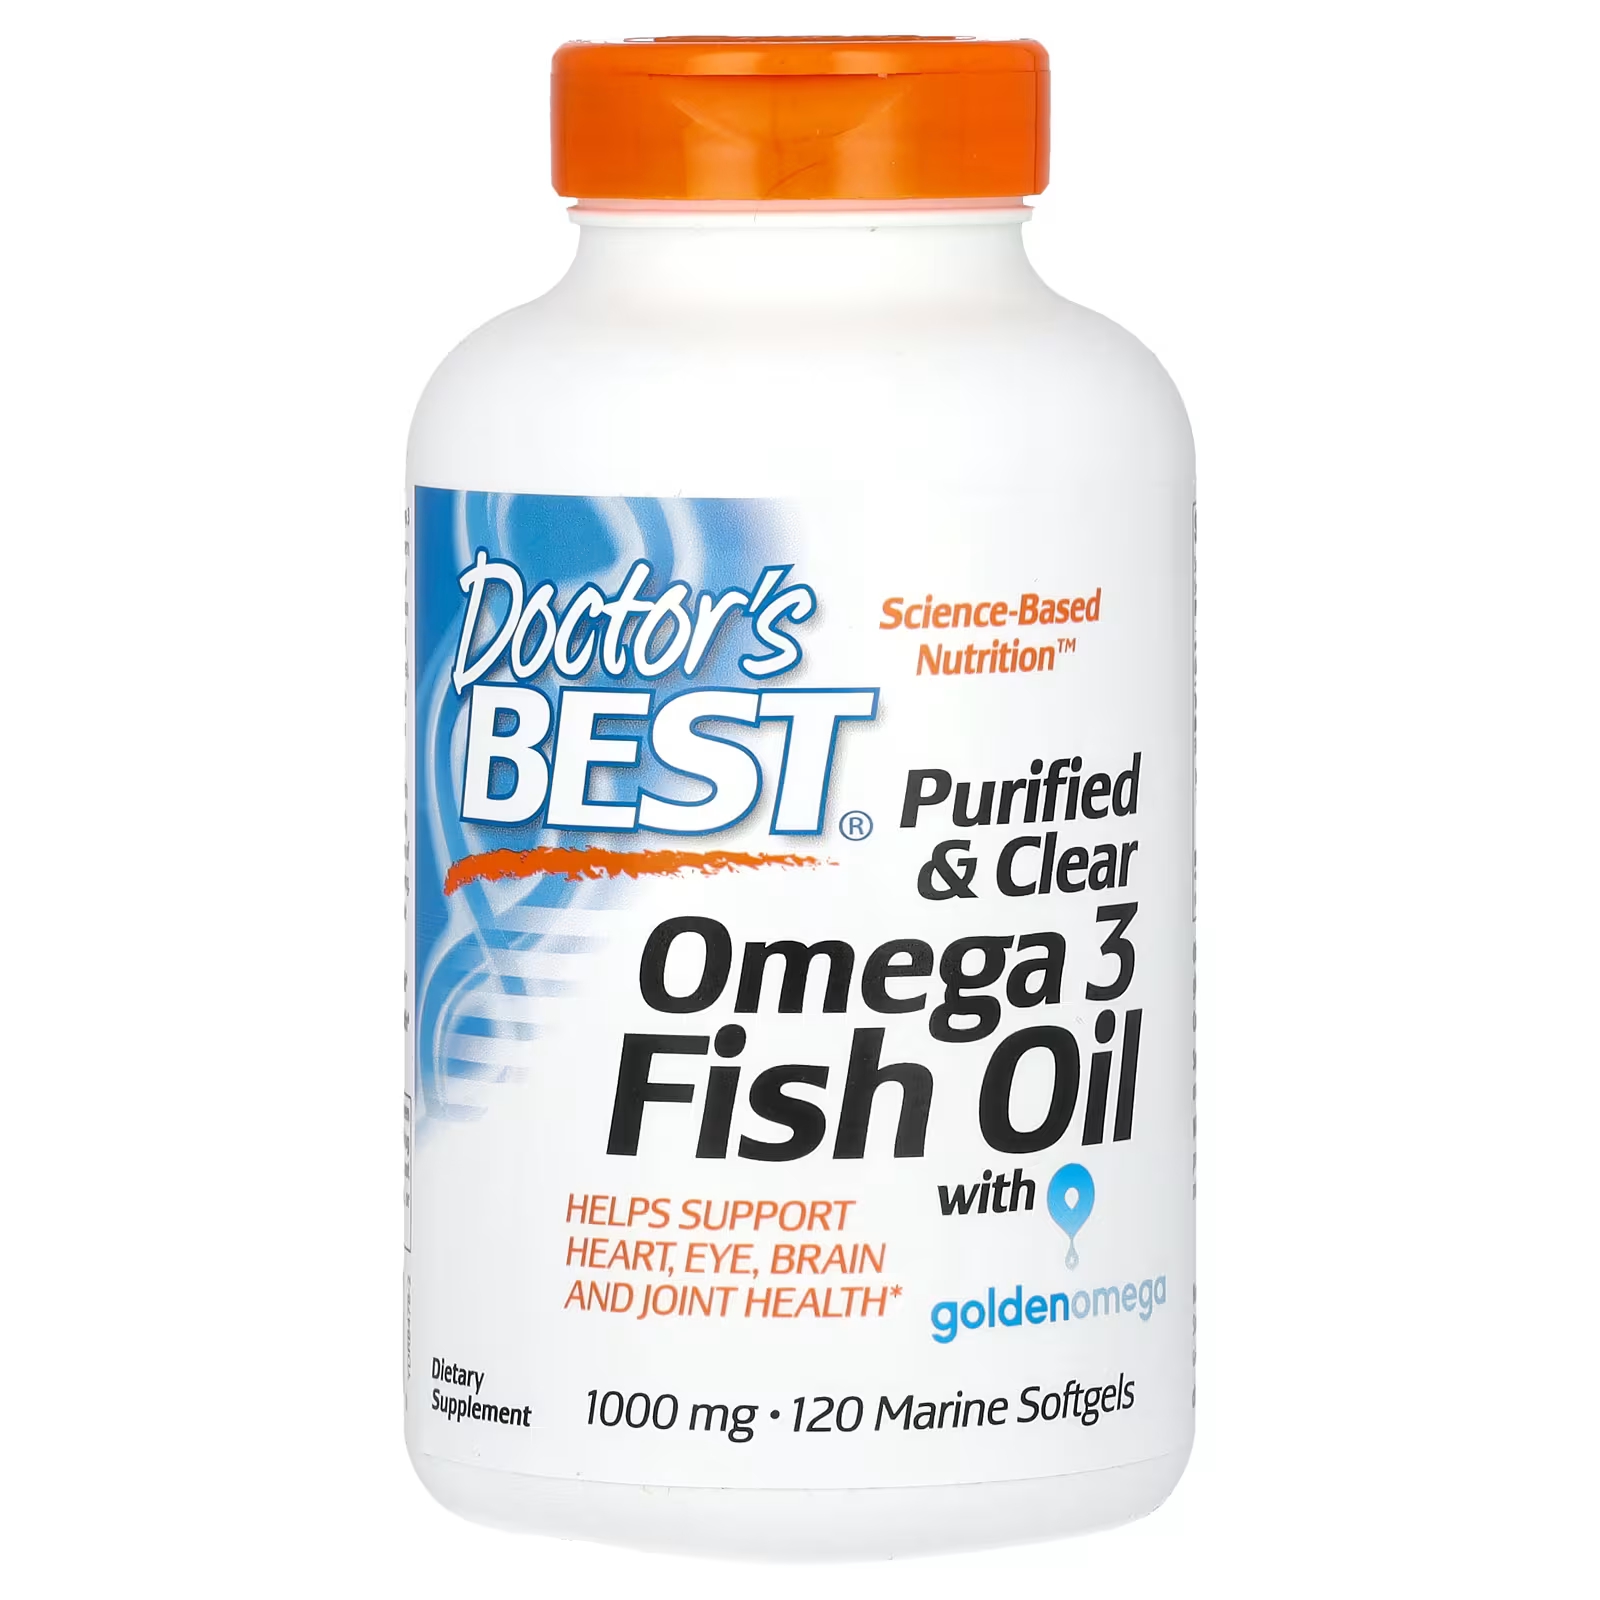 Очищенный и прозрачный рыбий жир омега-3 с Goldenomega, 2000 мг, 120 морских мягких таблеток (1000 мг на мягкую таблетку) Doctor's Best